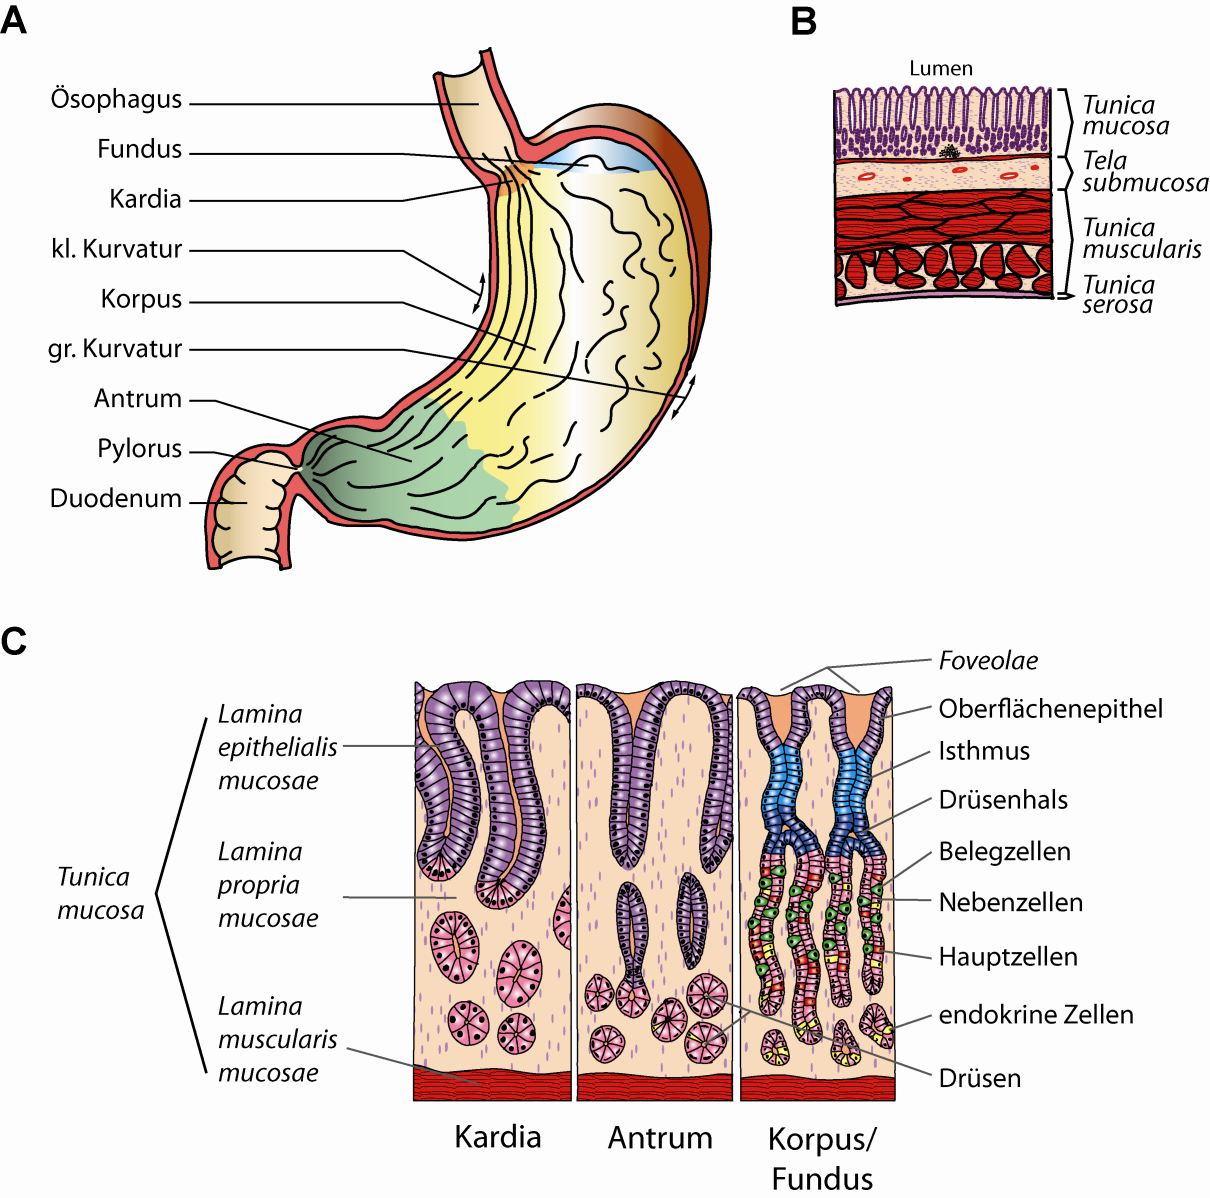 2 Einleitung Abb. 1: Anatomie und Histologie des Magens. A) Makroskopie: der Magen befindet sich im Gastrointestinaltrakt zwischen Ösophagus und Duodenum.